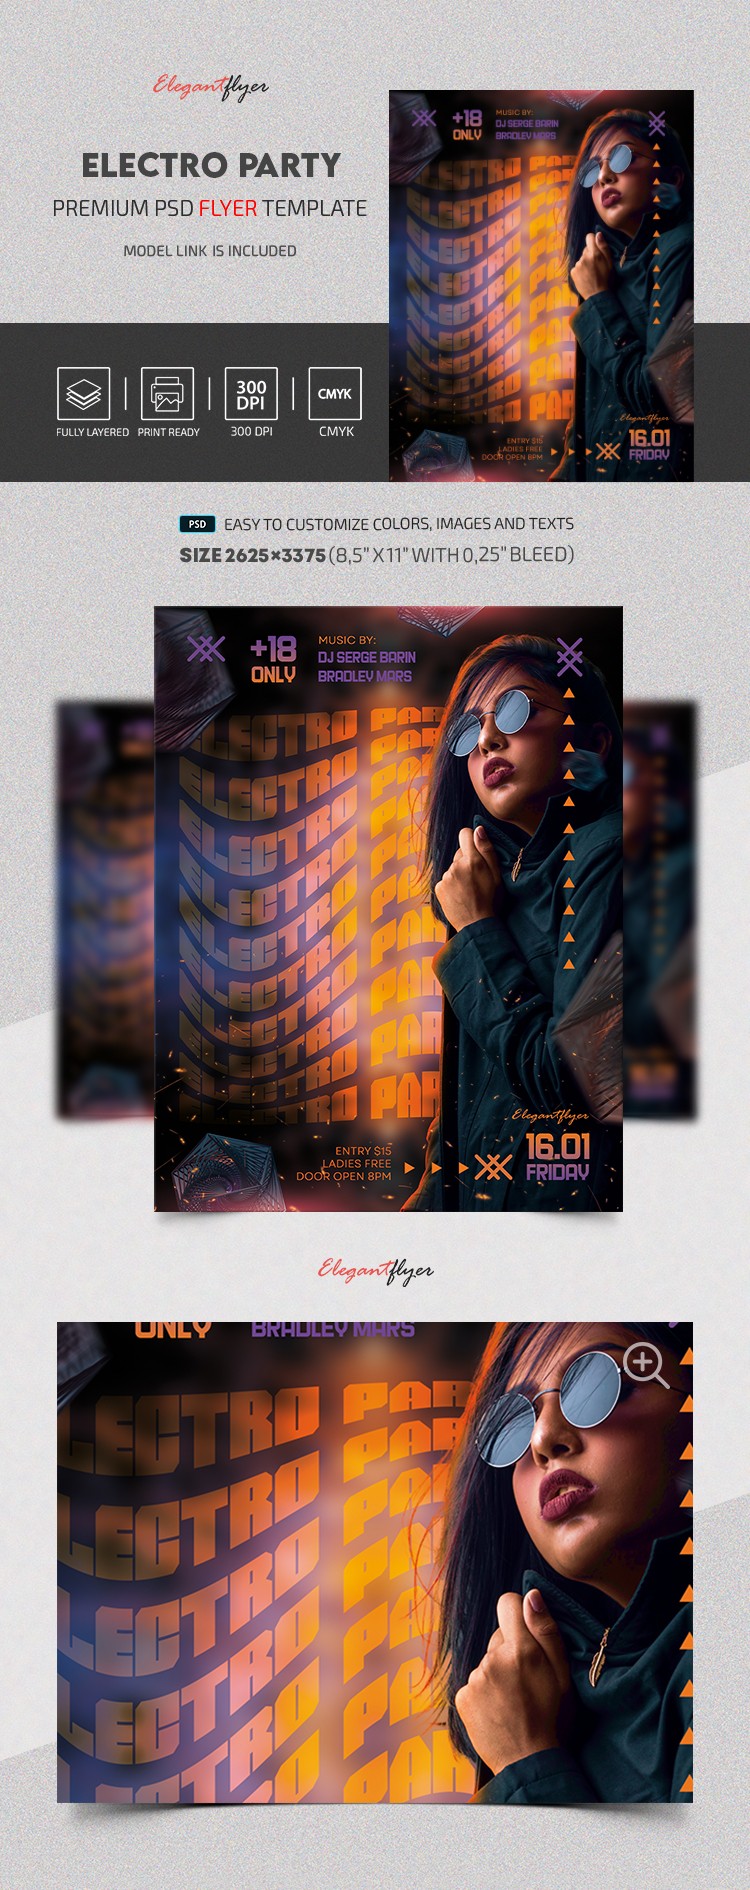 Electro Party Flyer by ElegantFlyer